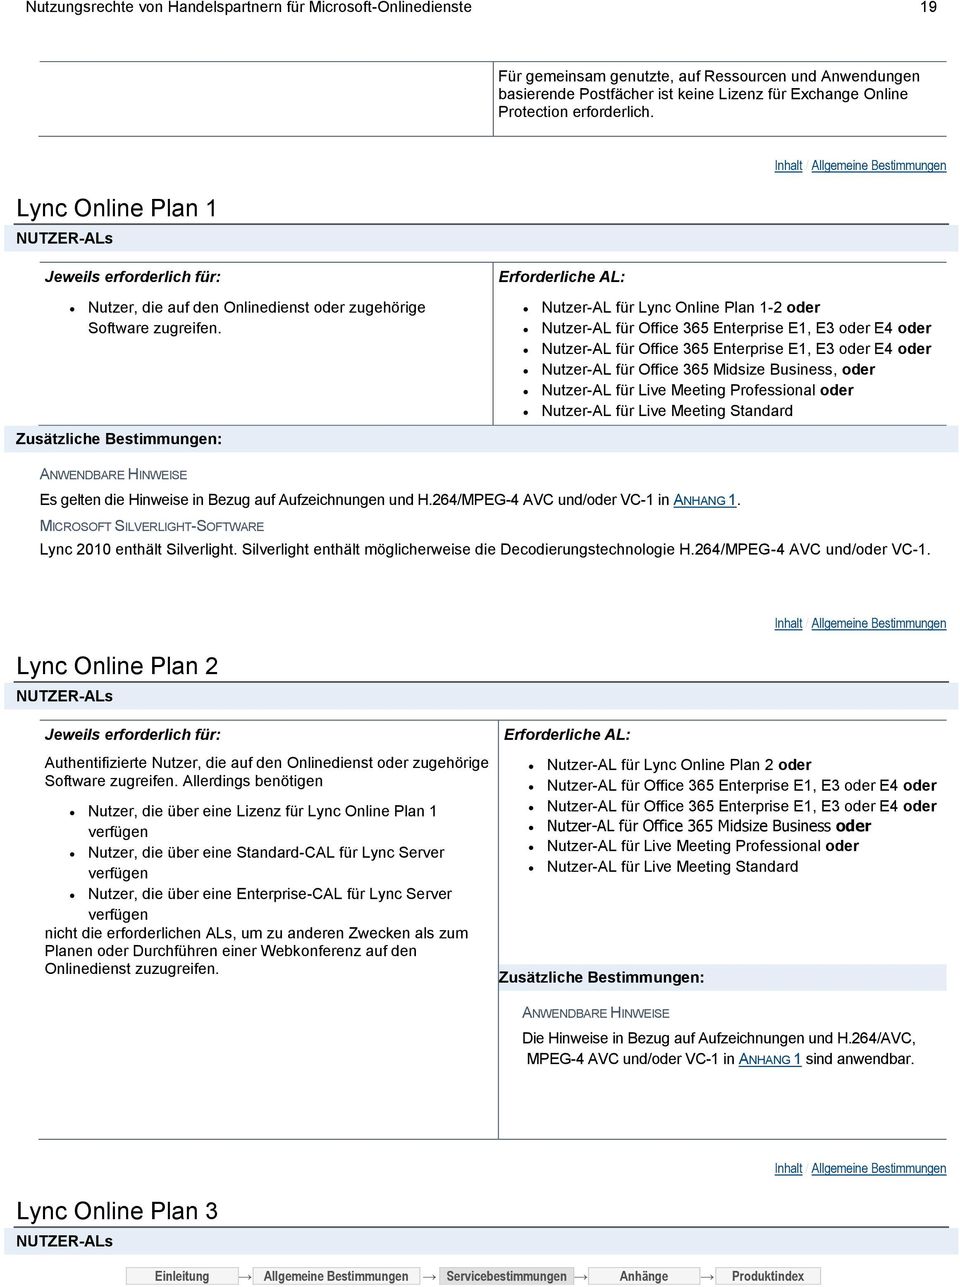 Zusätzliche Bestimmungen: Nutzer-AL für Lync Online Plan 1-2 oder Nutzer-AL für Office 365 Enterprise E1, E3 oder E4 oder Nutzer-AL für Office 365 Enterprise E1, E3 oder E4 oder Nutzer-AL für Office